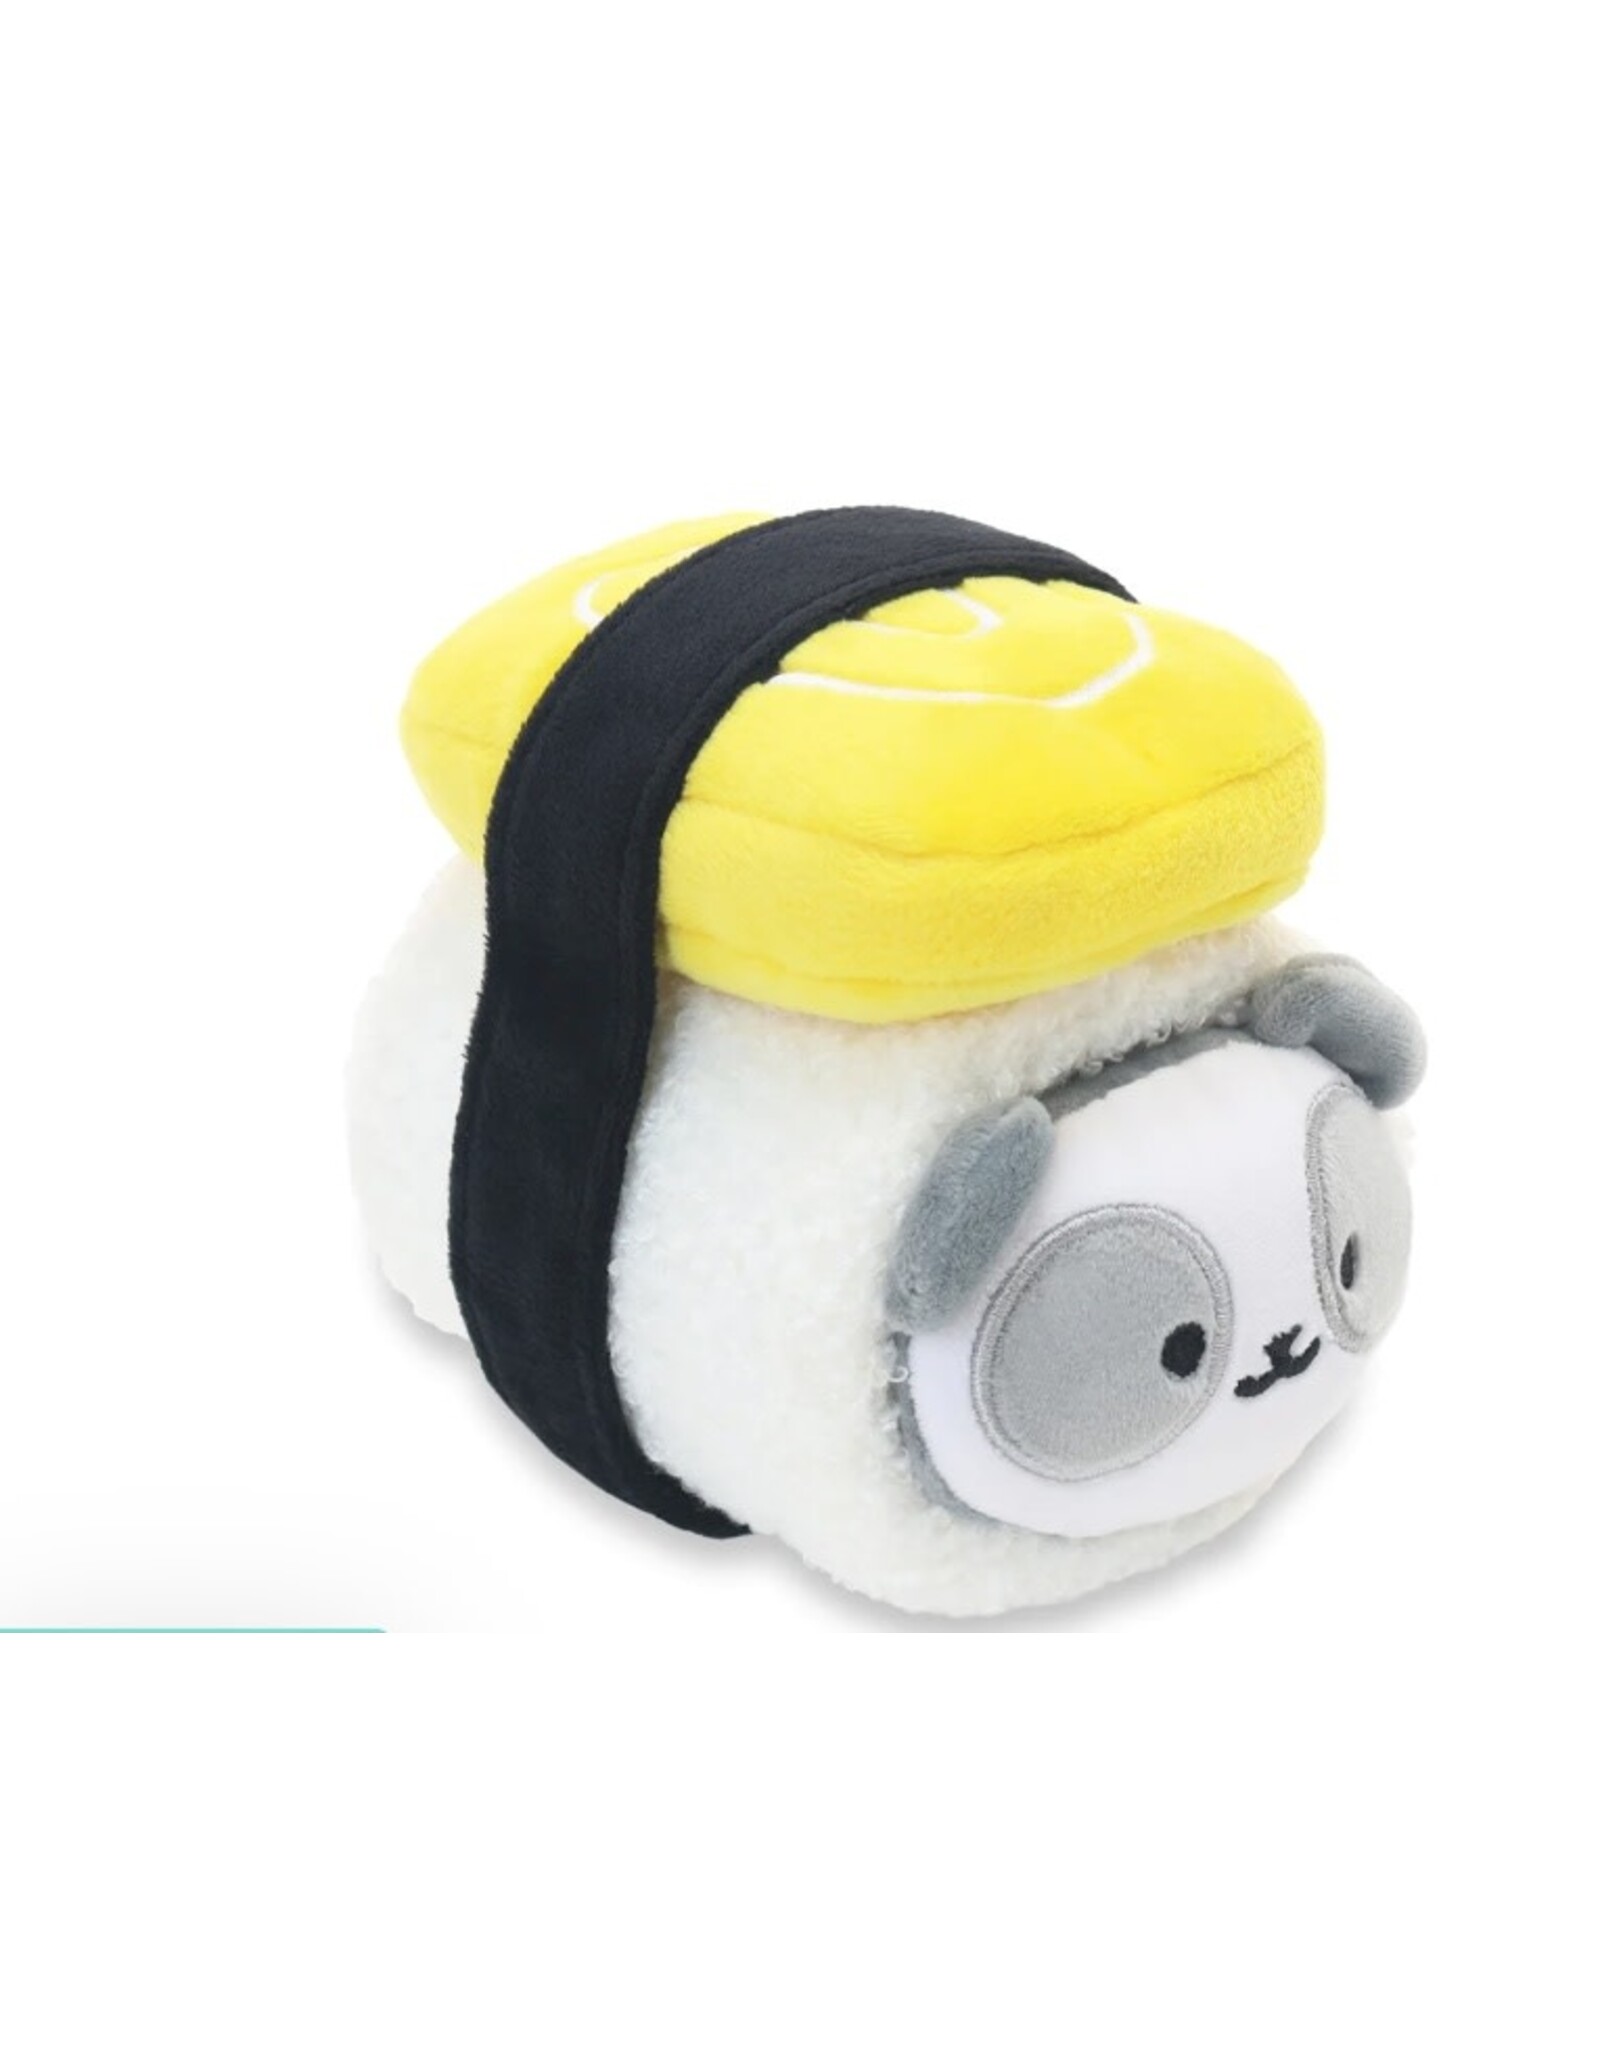 Anirollz Sushi Tamago Roll Pandaroll Plush Blanket Small